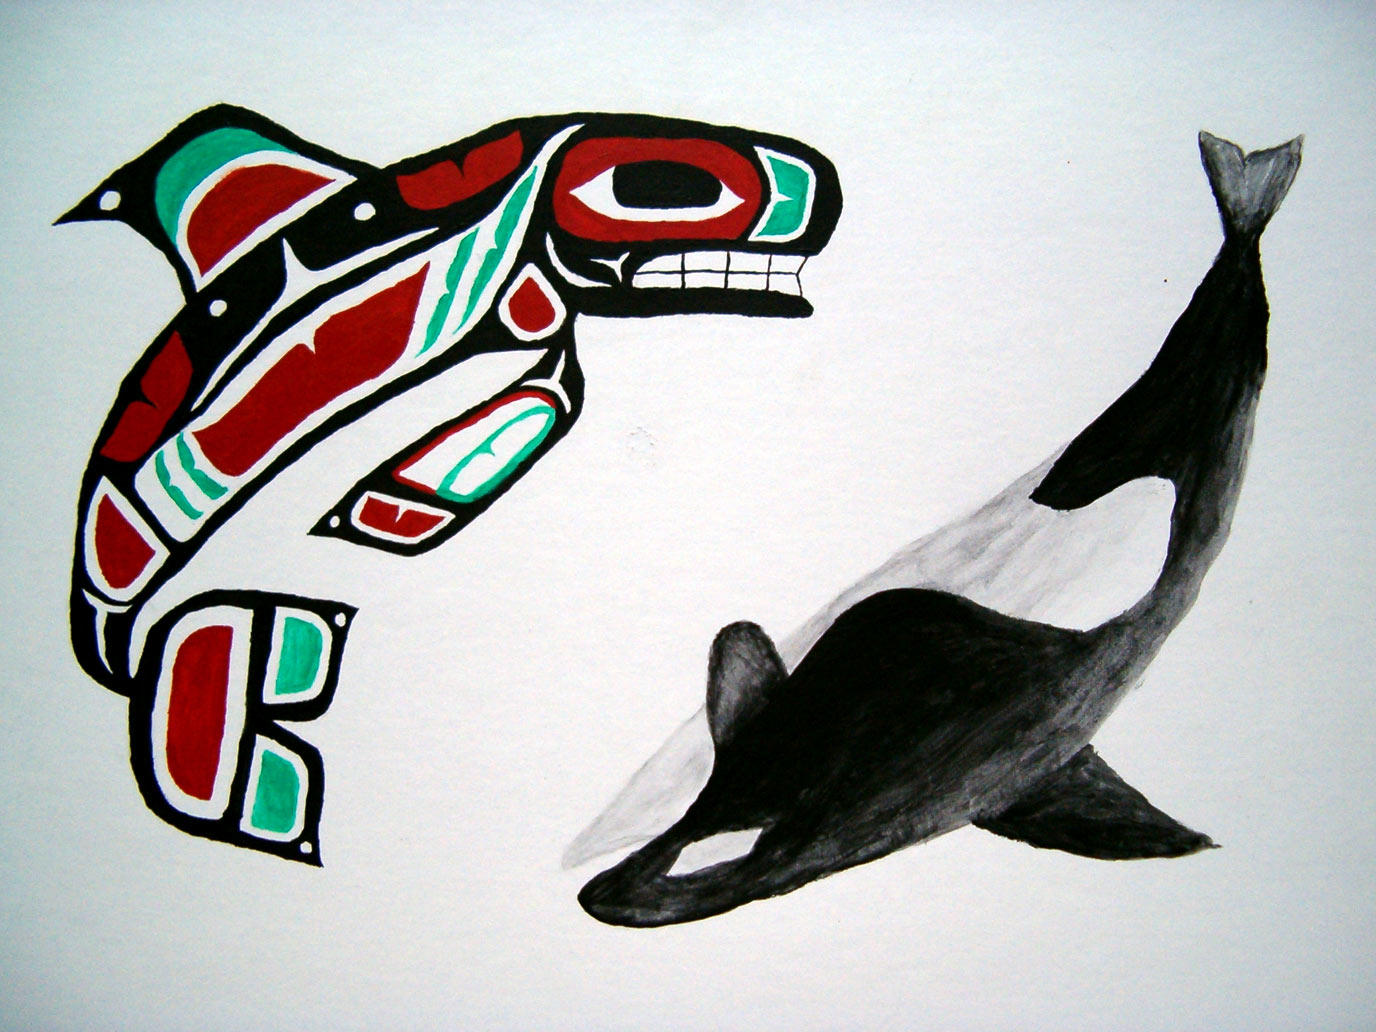 tlingit killer whale by Ahlana on DeviantArt